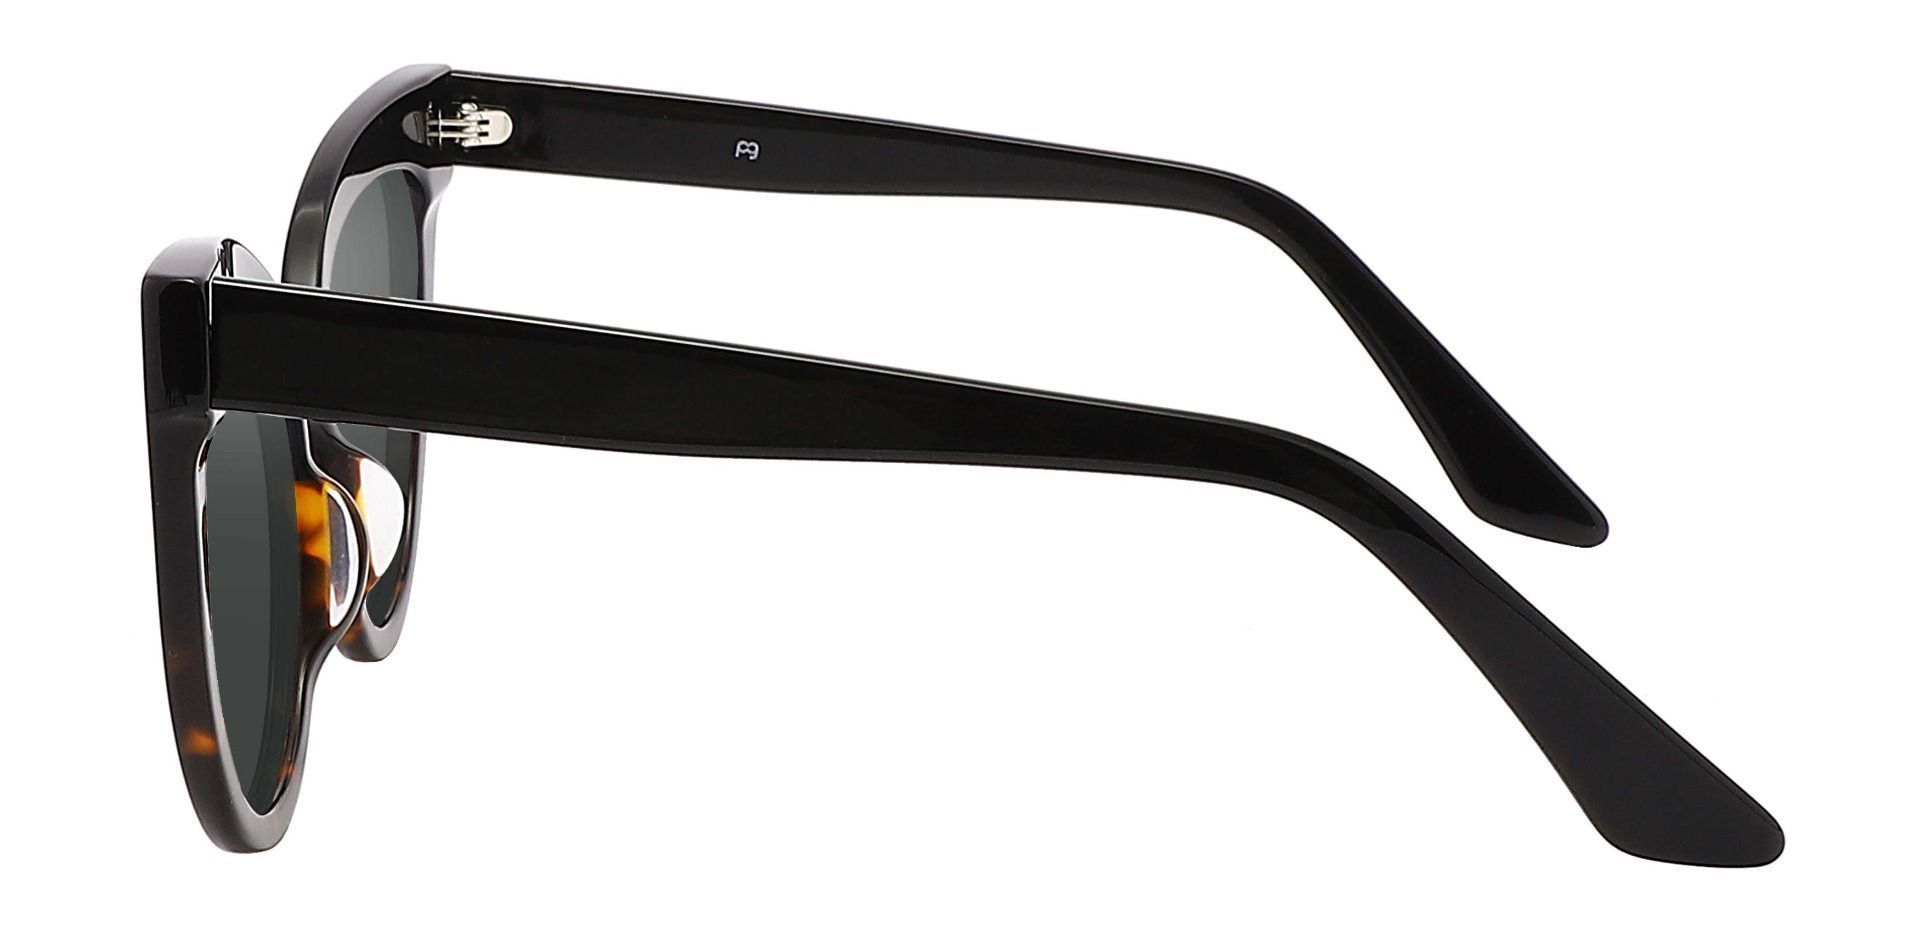 Sedalia Cat Eye Reading Sunglasses - Black Frame With Gray Lenses